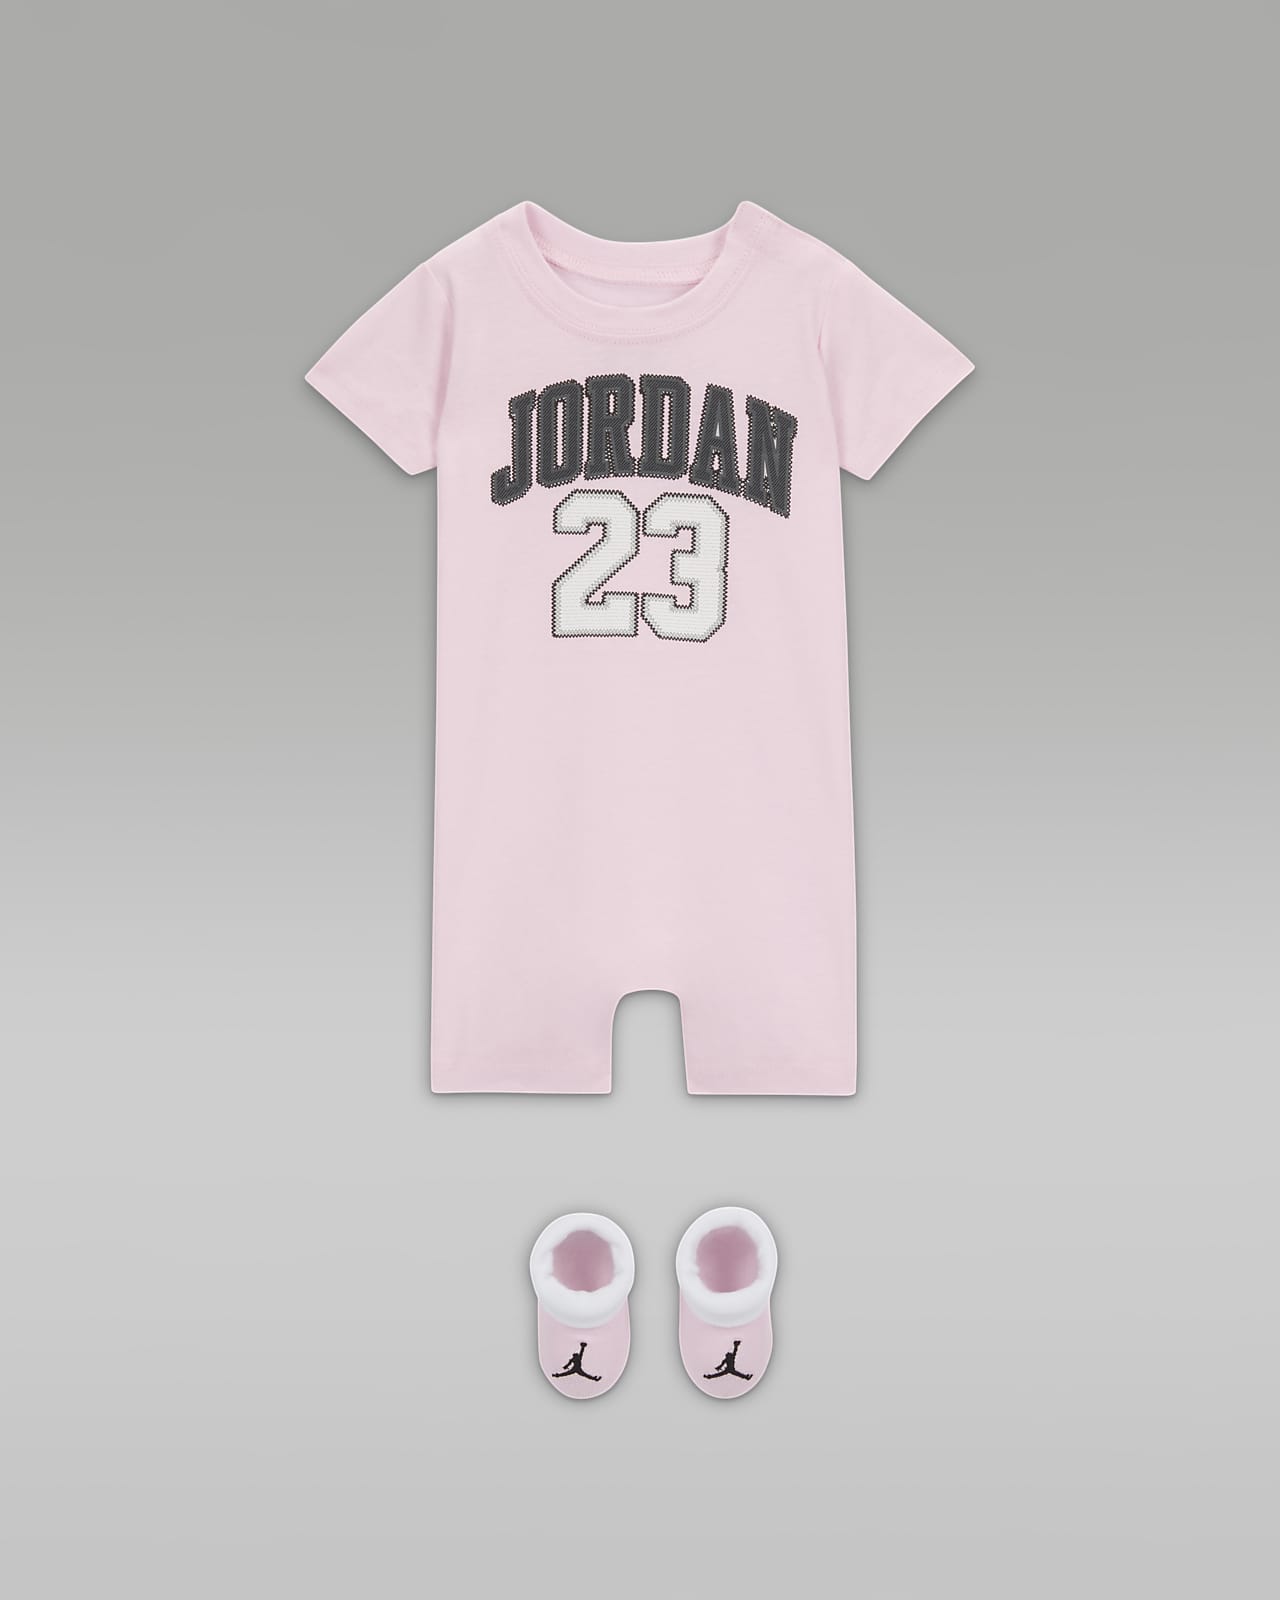 Jordan Conjunto de peto y botines - Bebé